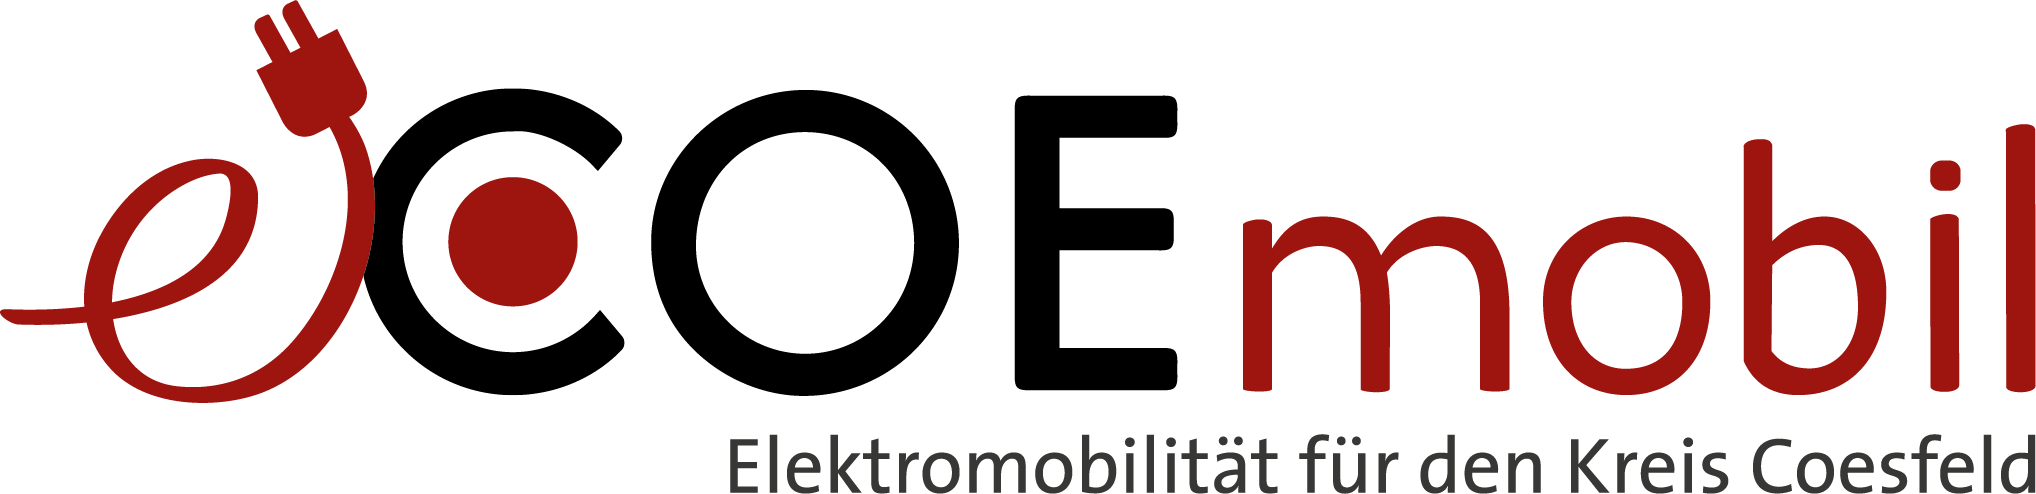 COEmobil Logo 2020